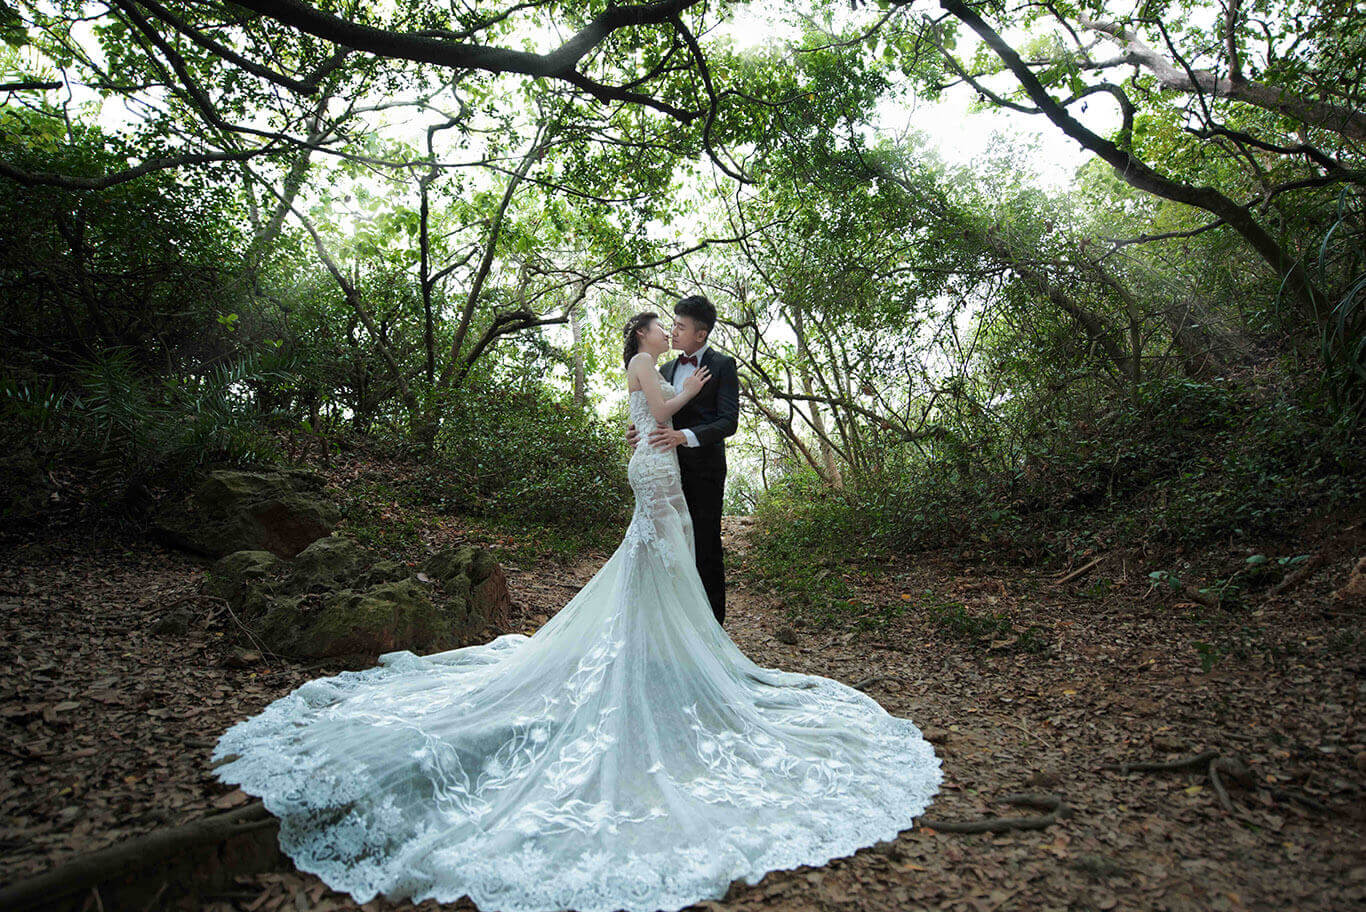 樂芙爾婚紗.婚禮的婚紗作品圖片